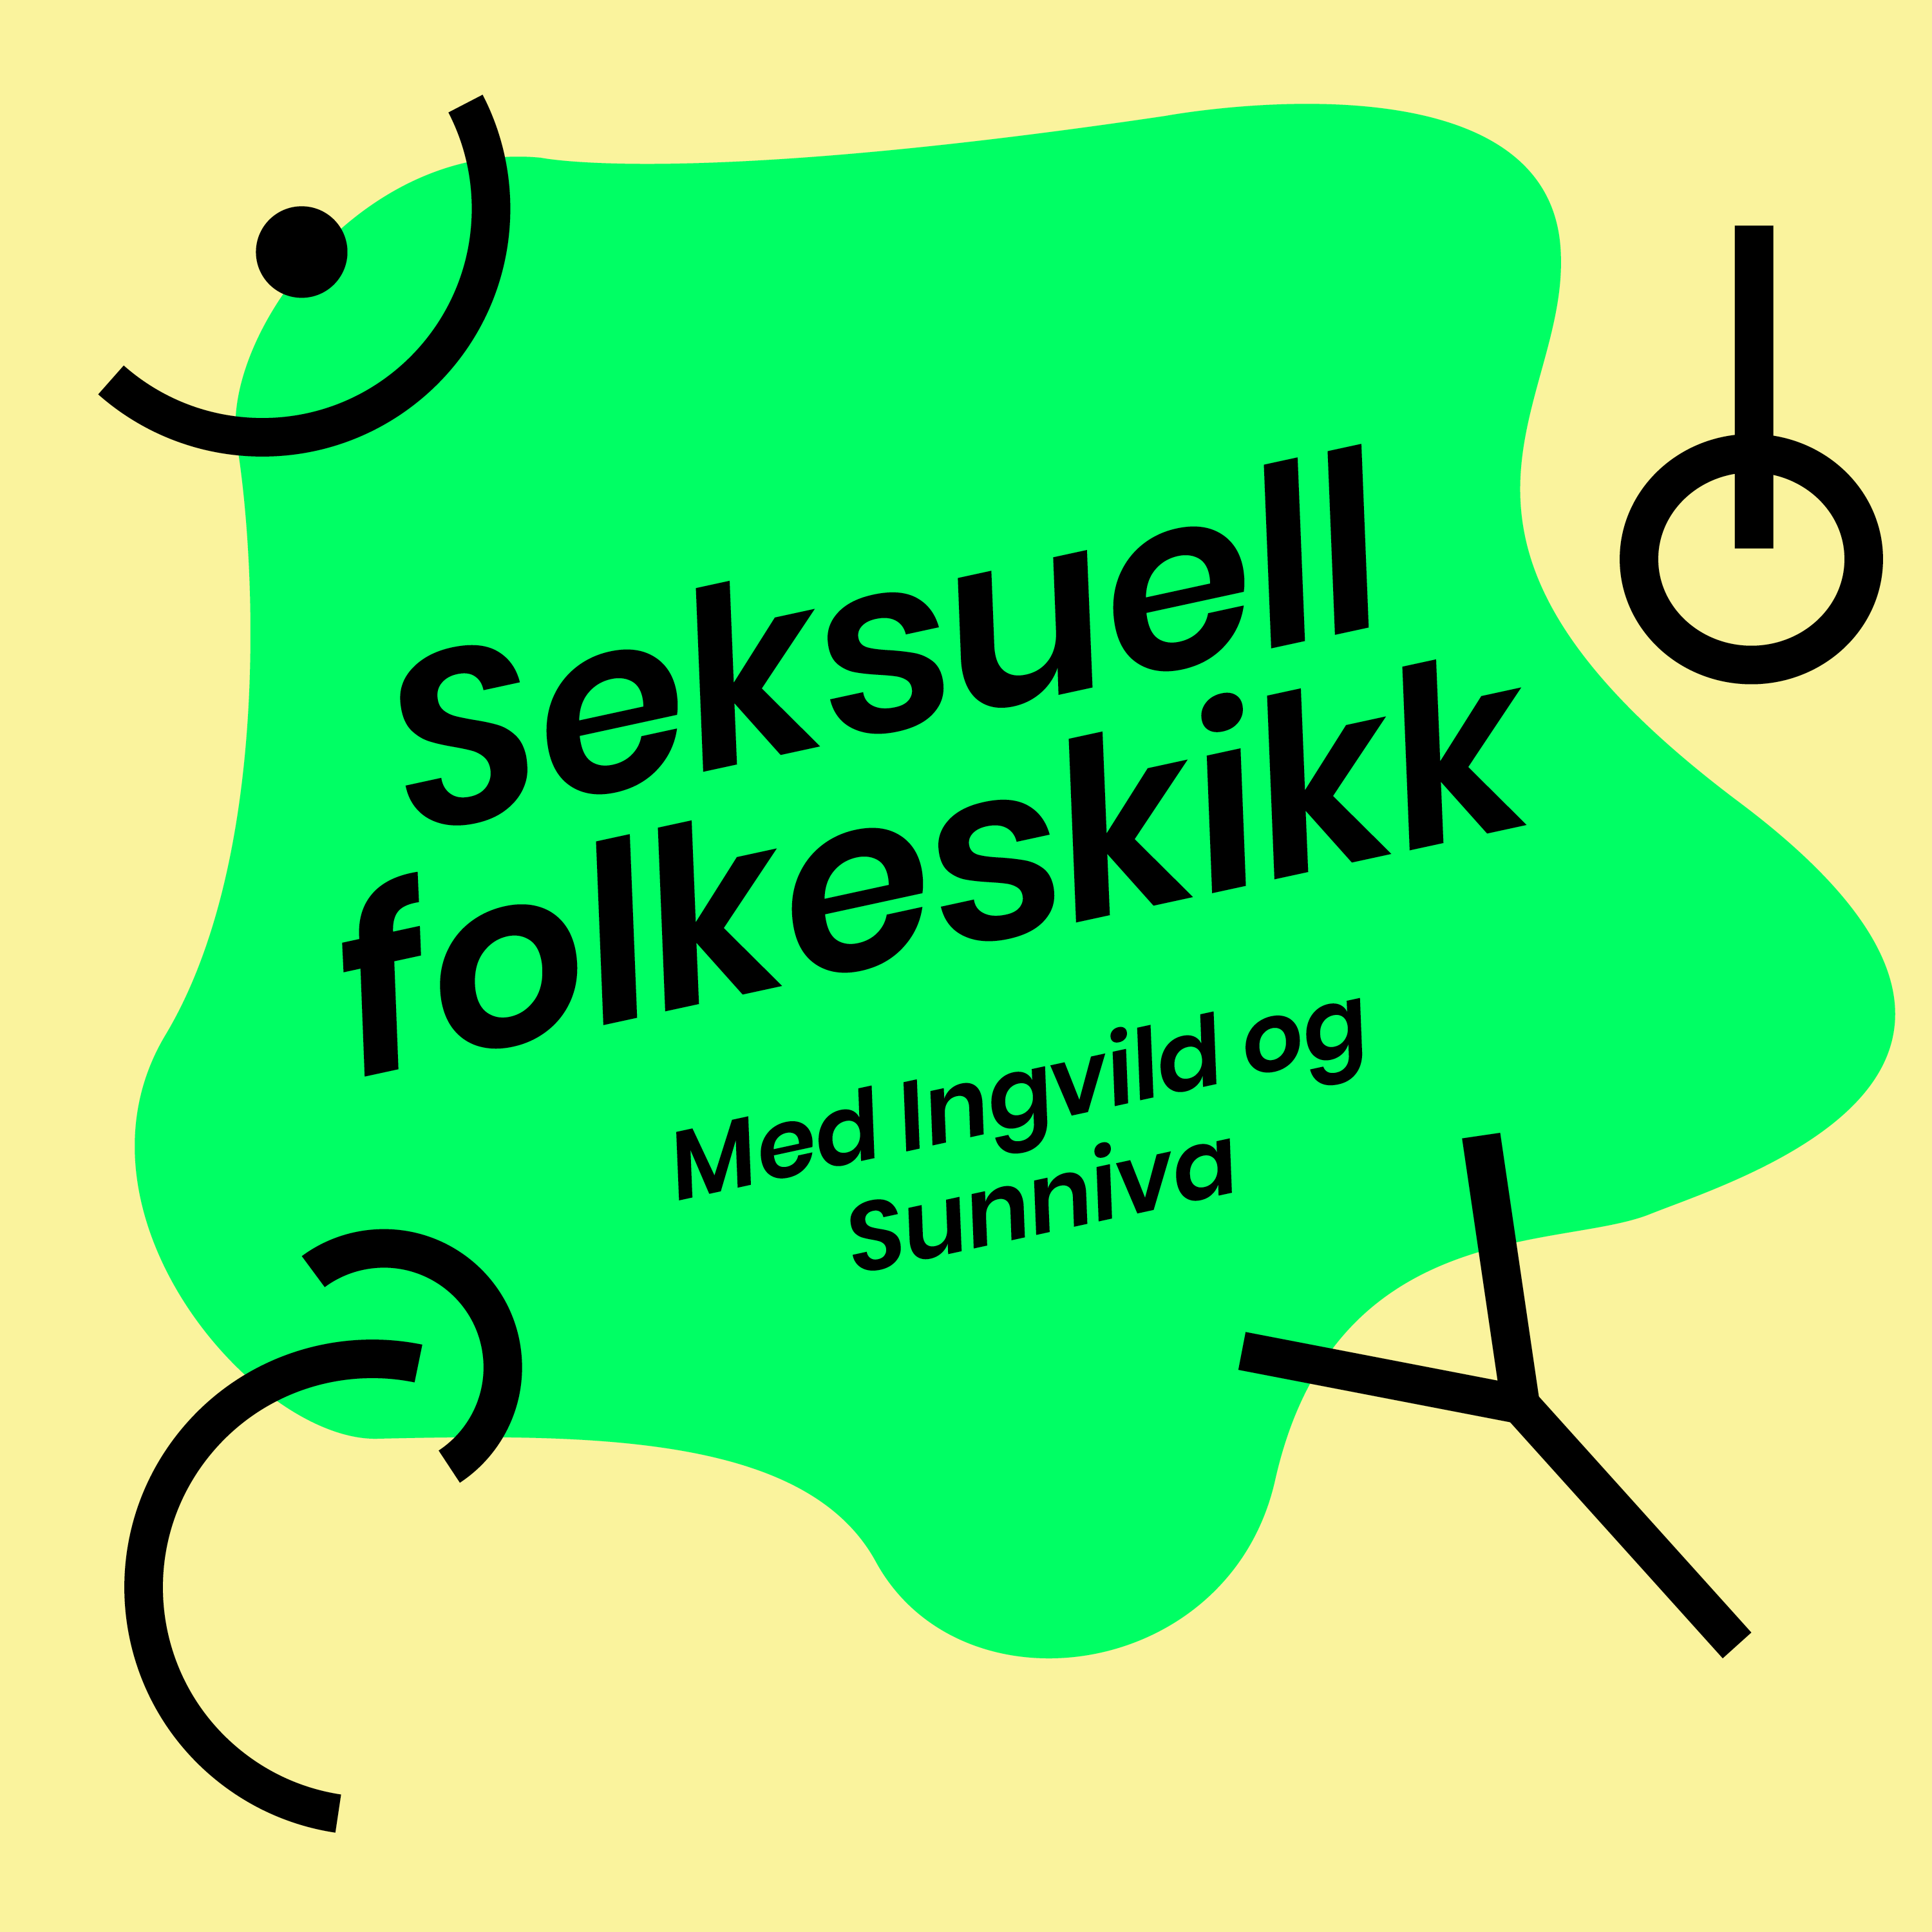 Seksuell folkeskikk_til Nok.Norge